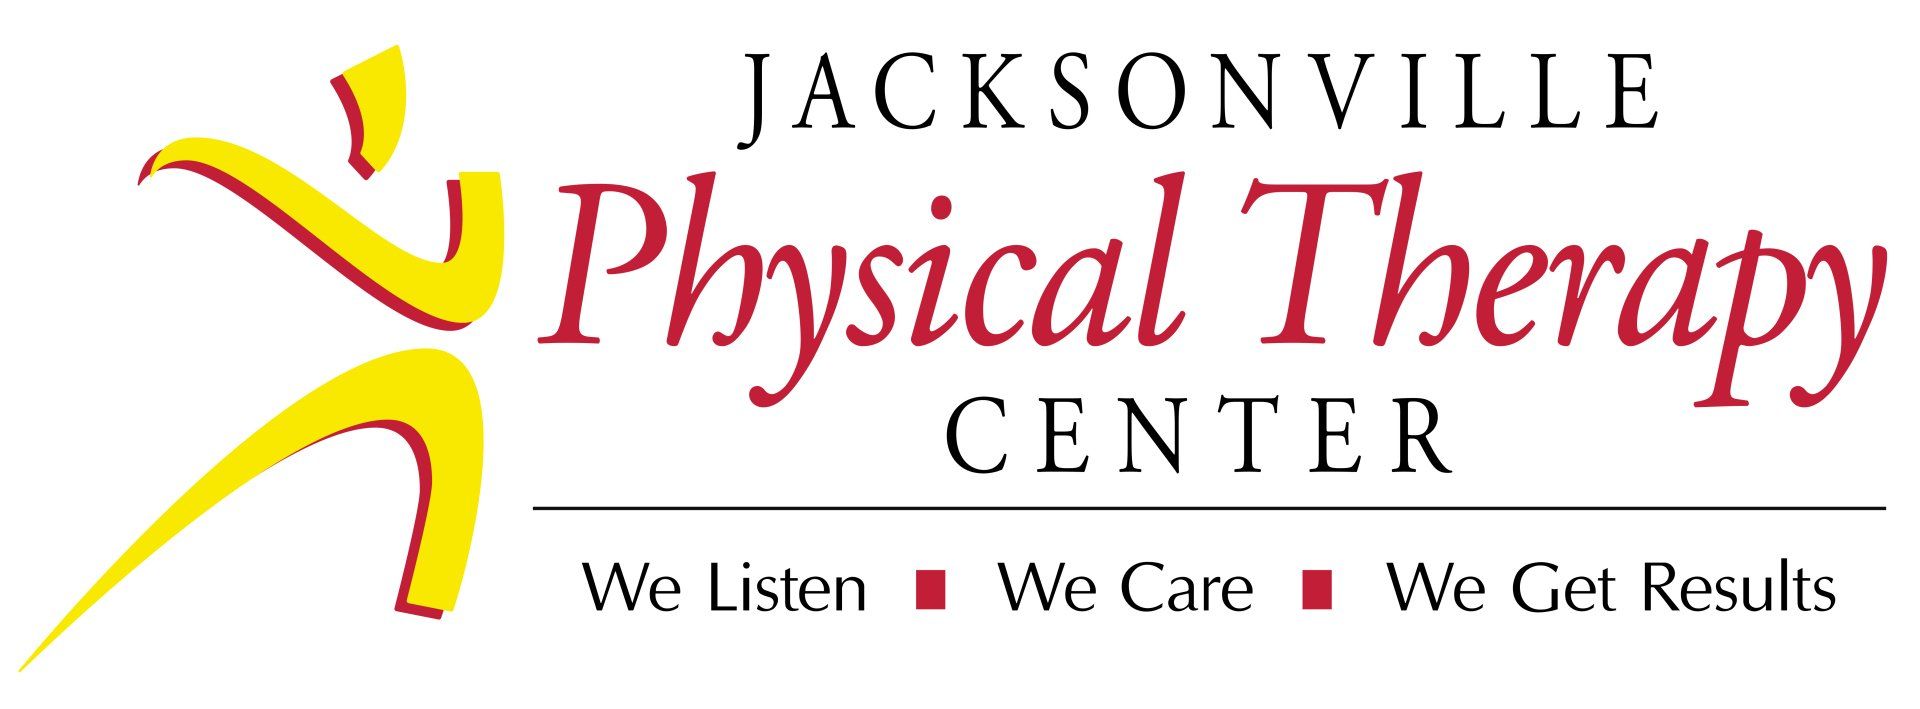 Jacksonville Physical Center - Logo